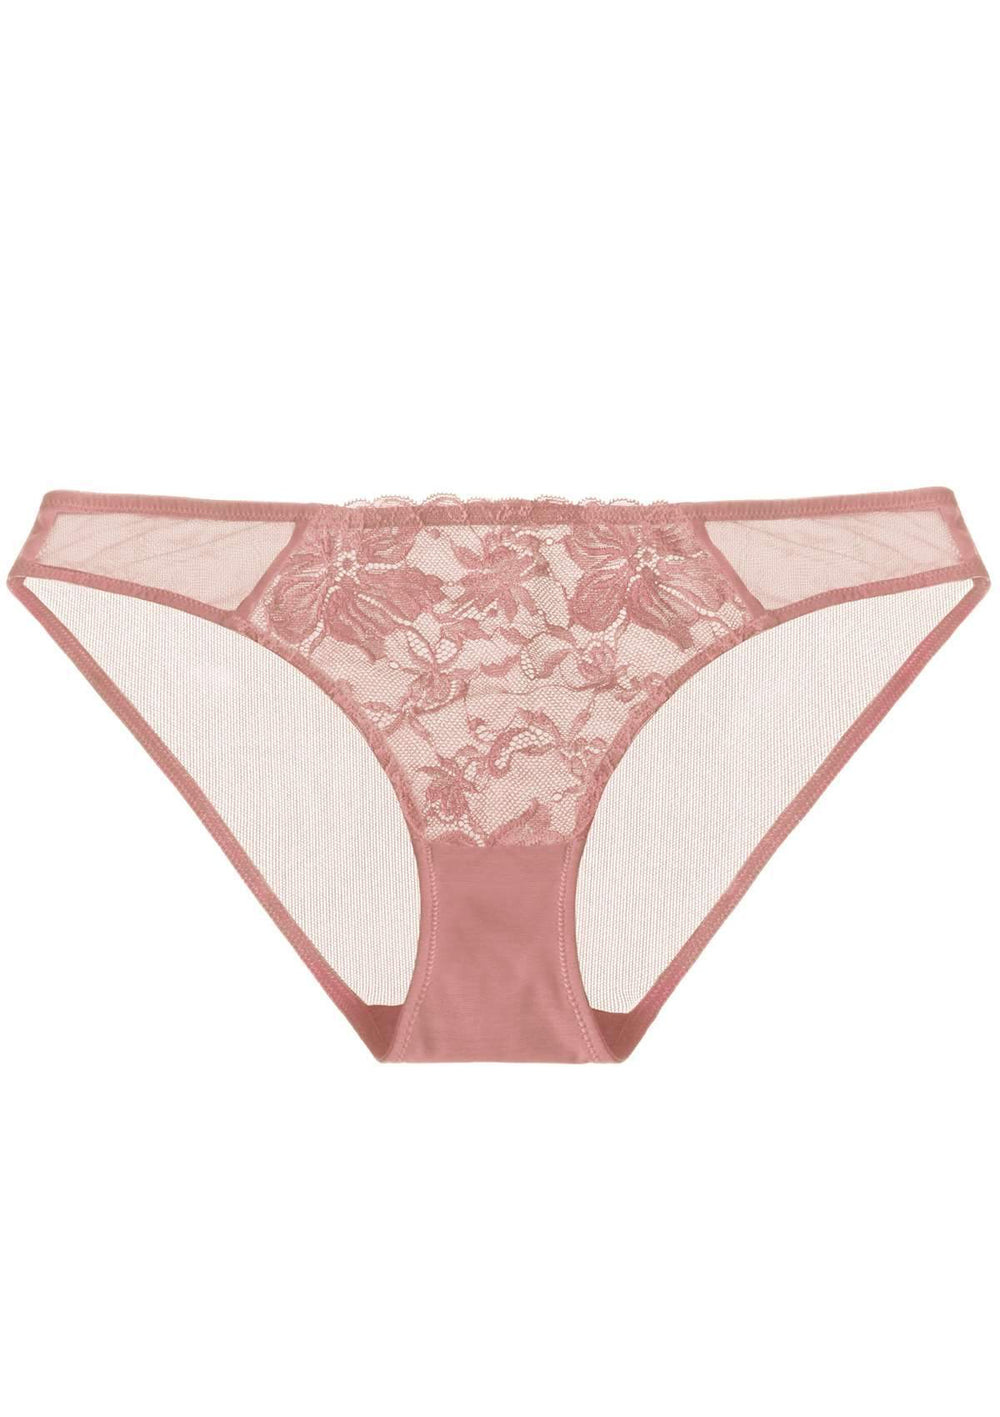 HSIA Breathable Sexy Lace Light Coral Bikini Underwear